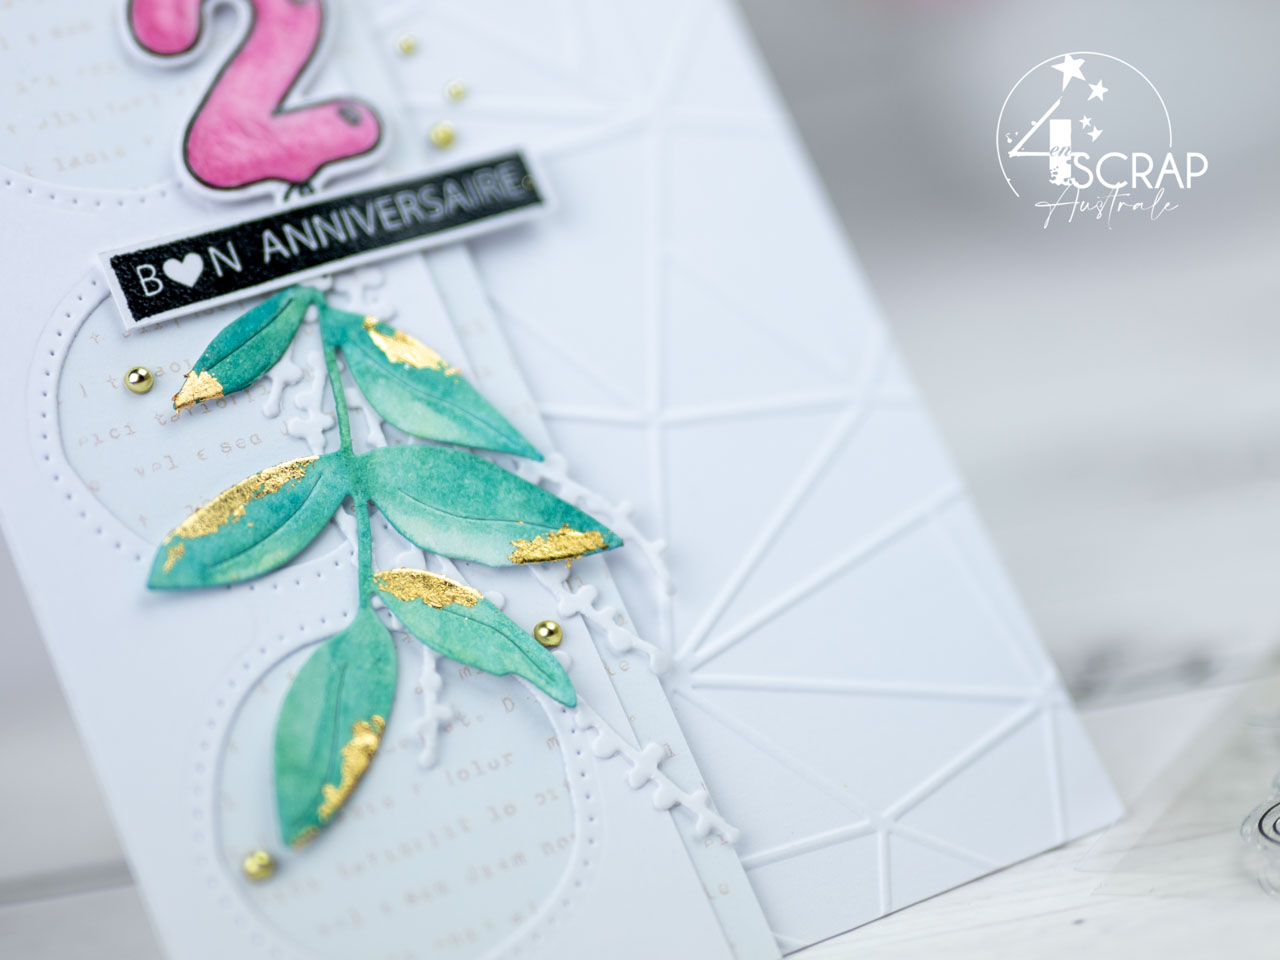 Création d'une carte d'anniversaire, 2 ans, chiffre ballon et feuillage aquarelle embelli à la feuille d'or pour la collection anniversaire de 4enscrap.